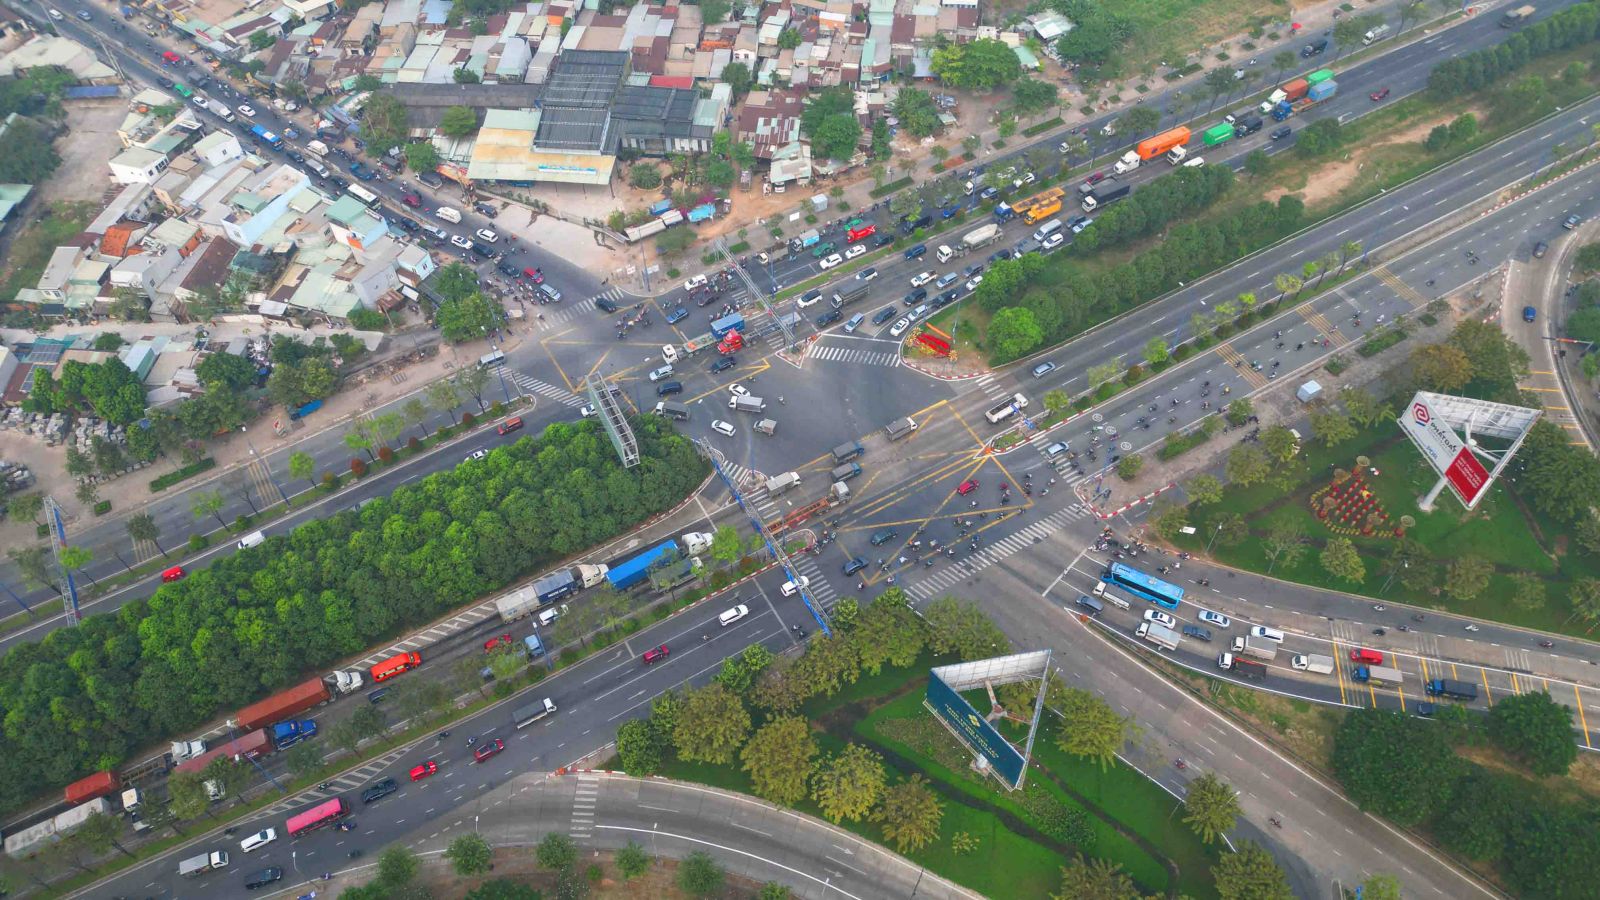 tuyến cao tốc TP HCM - Long Thành - Dầu Giây dài hơn 55km đã khai thác từ năm 2016 với quy mô 4 làn xe